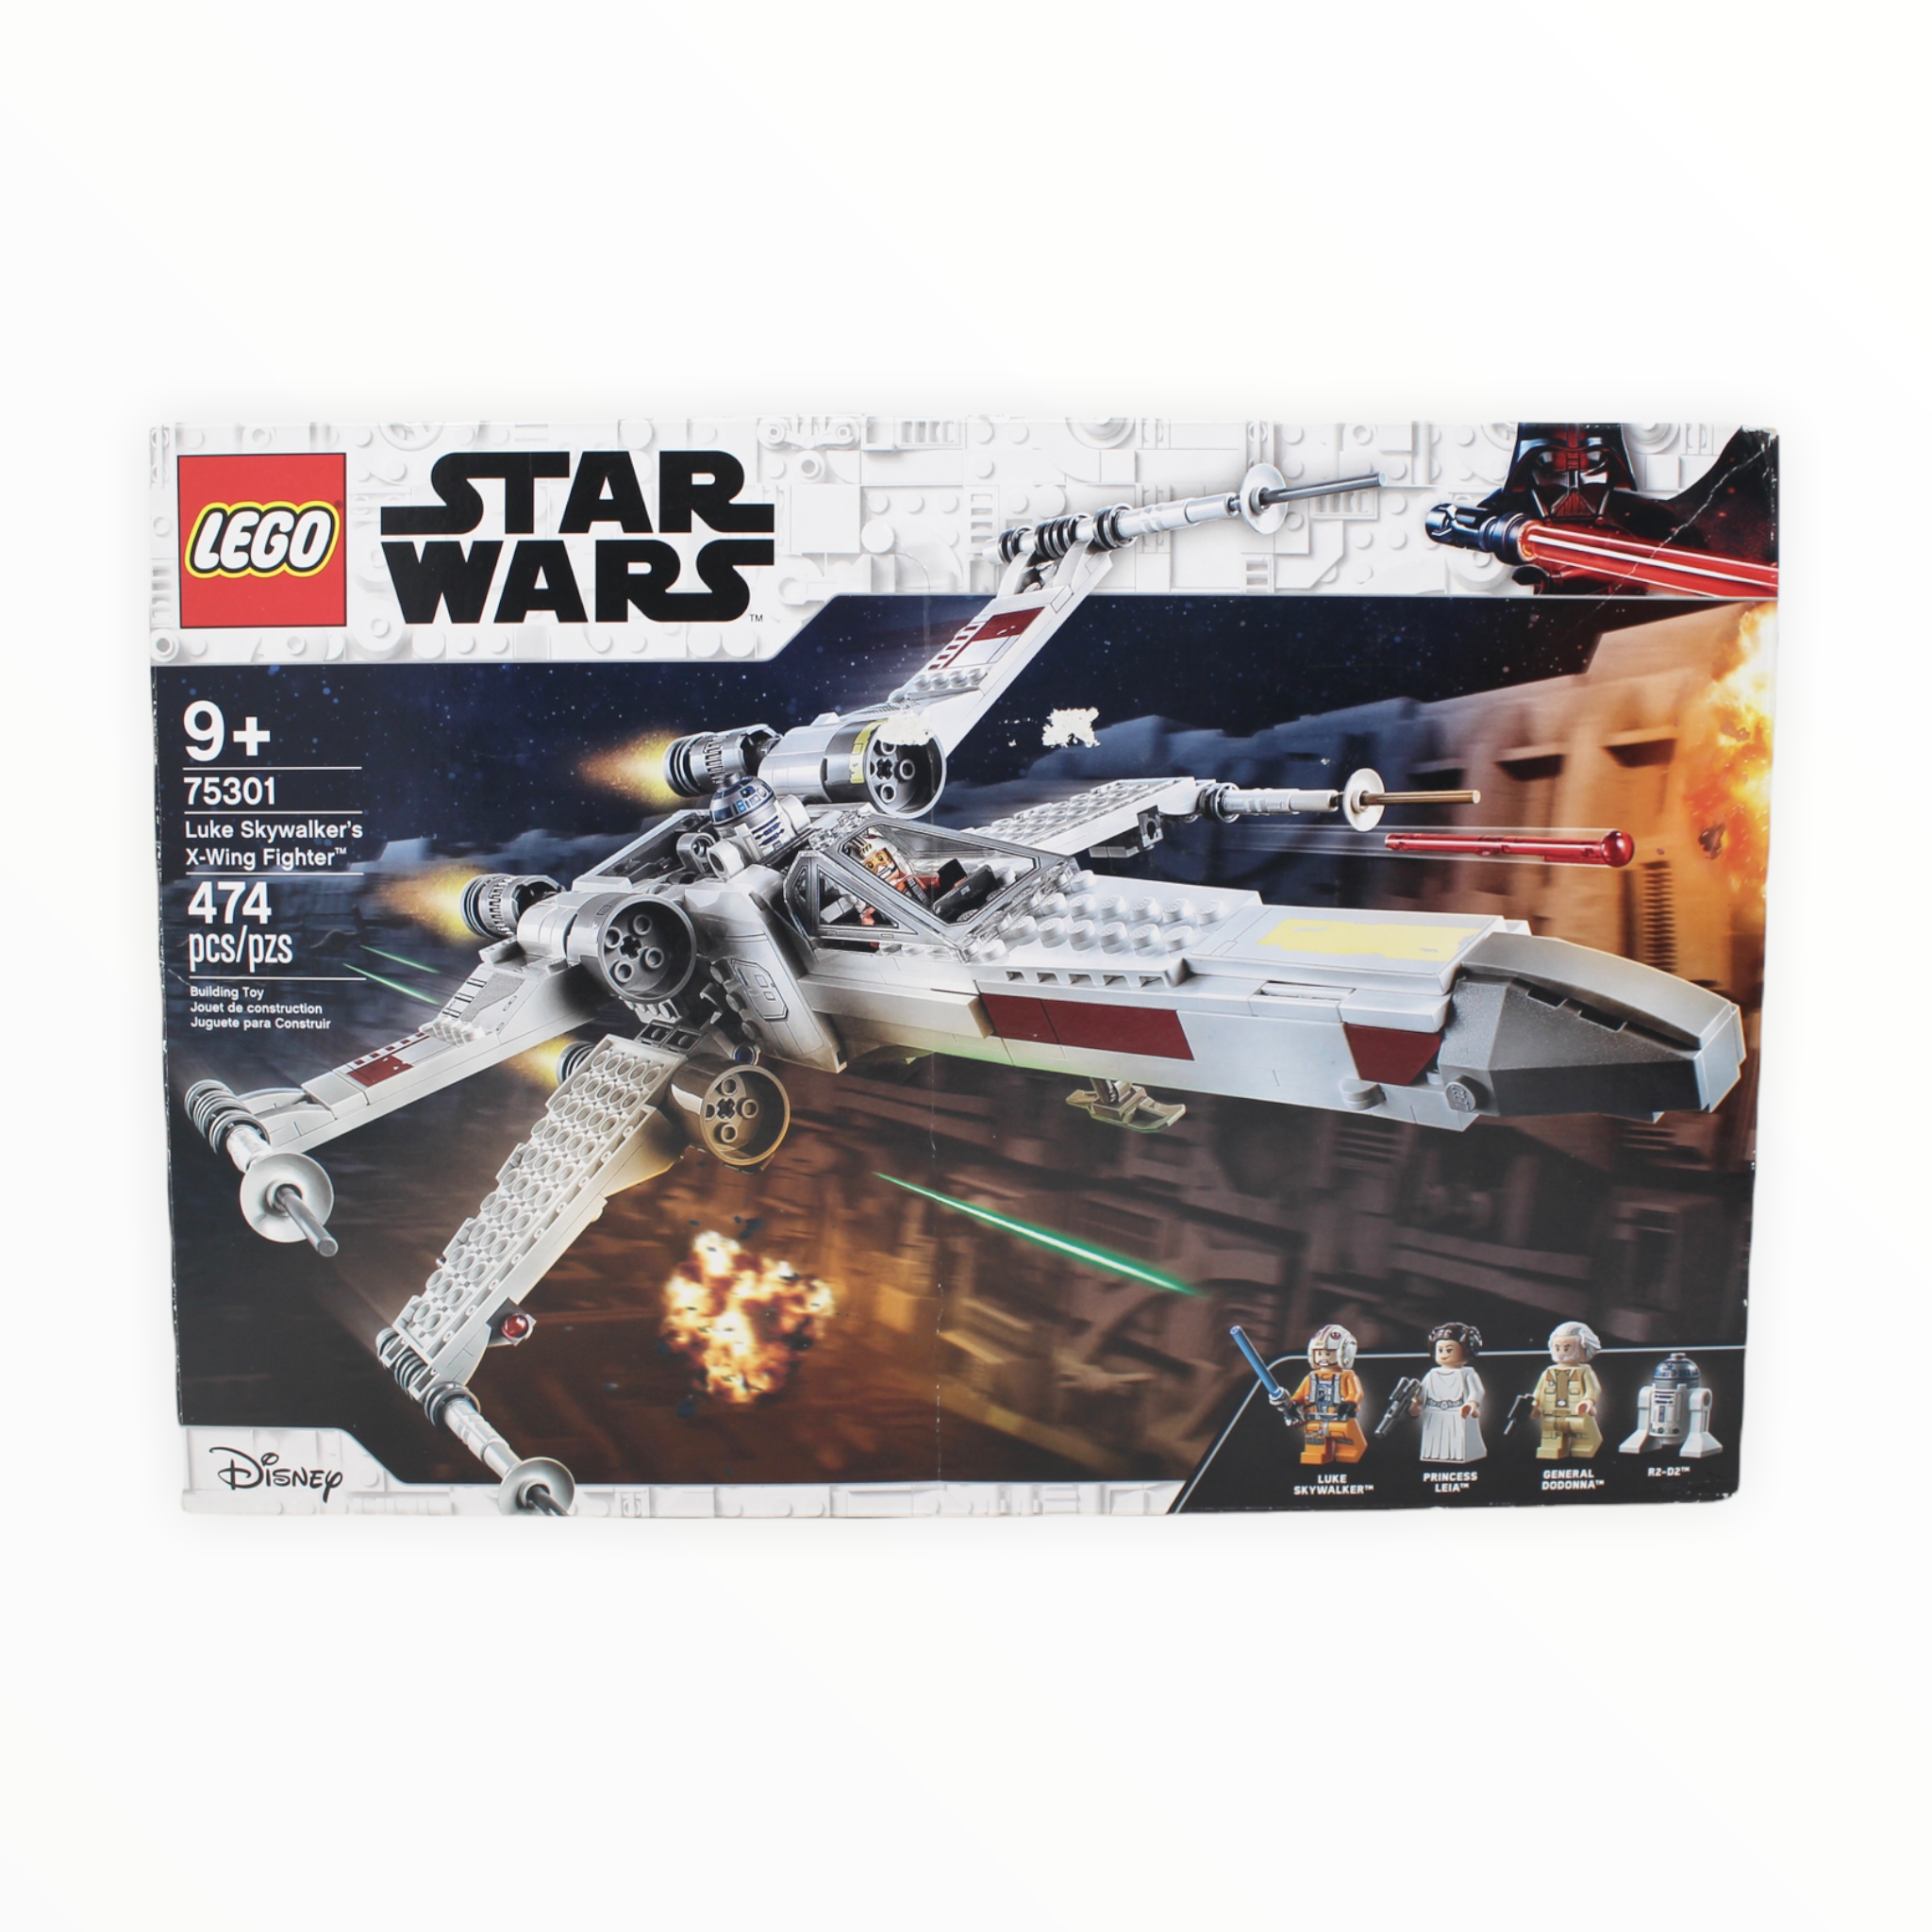 Certified Used Set 75301 Star Wars Luke Skywalker’s X-Wing Fighter